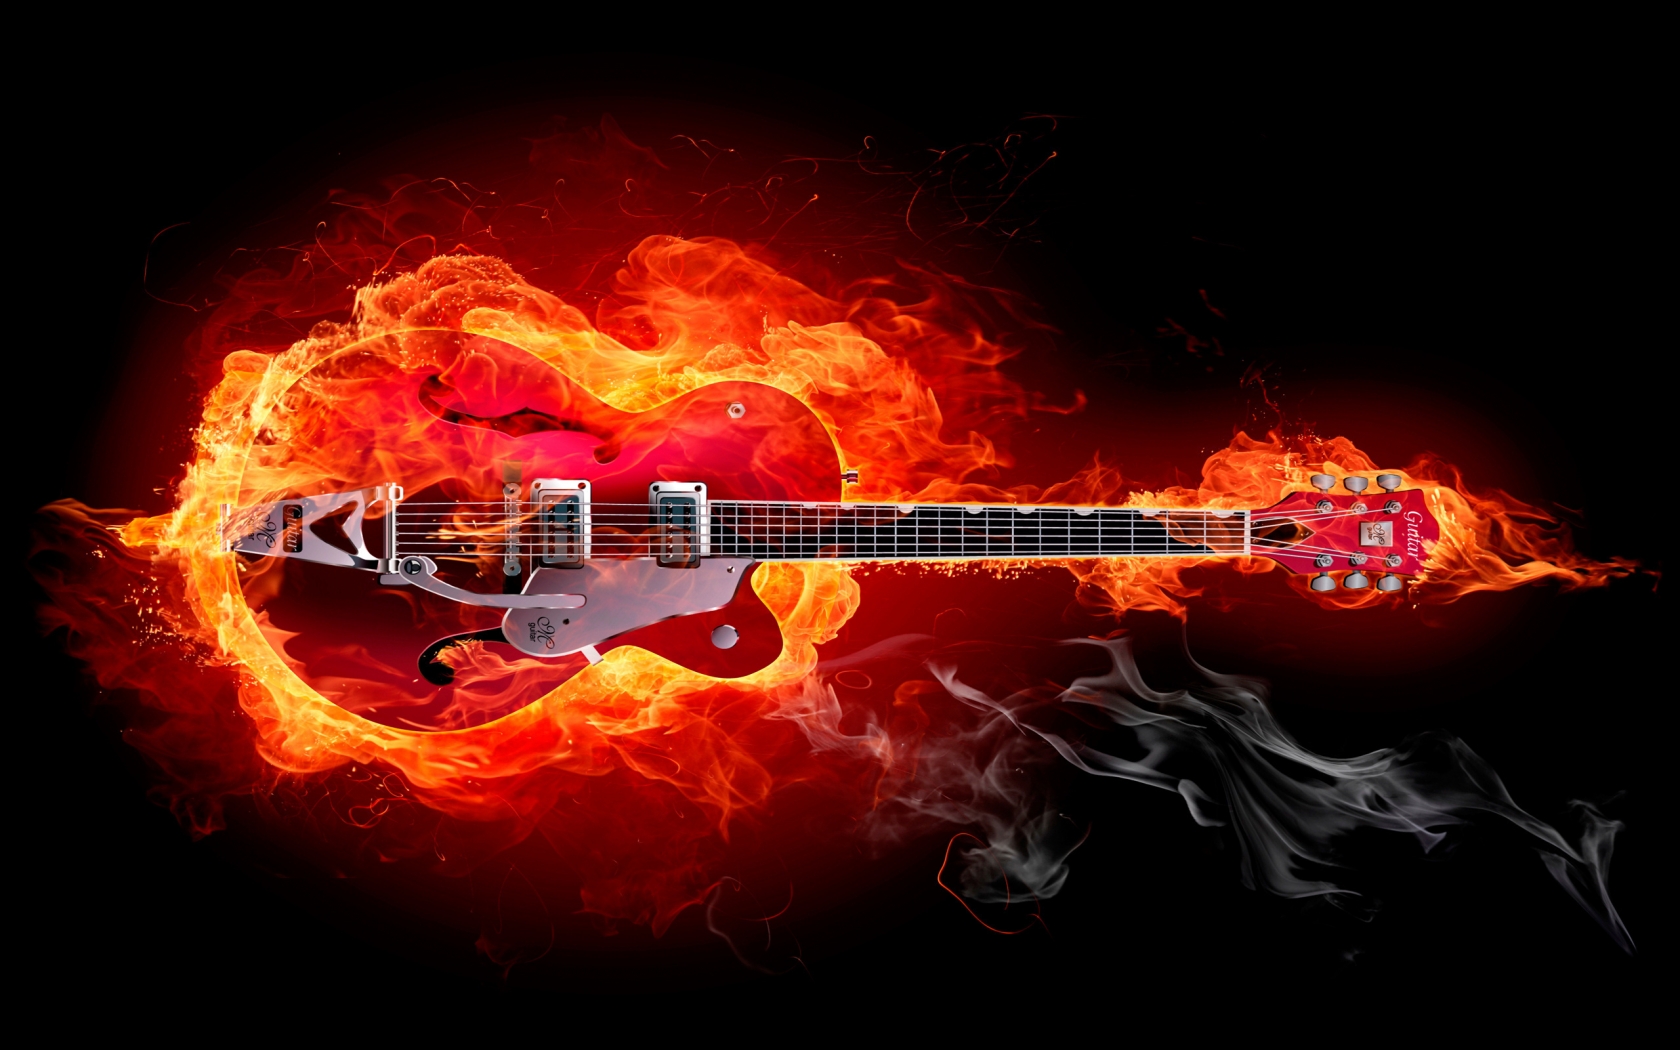 Fire Guitar for 1680 x 1050 widescreen resolution